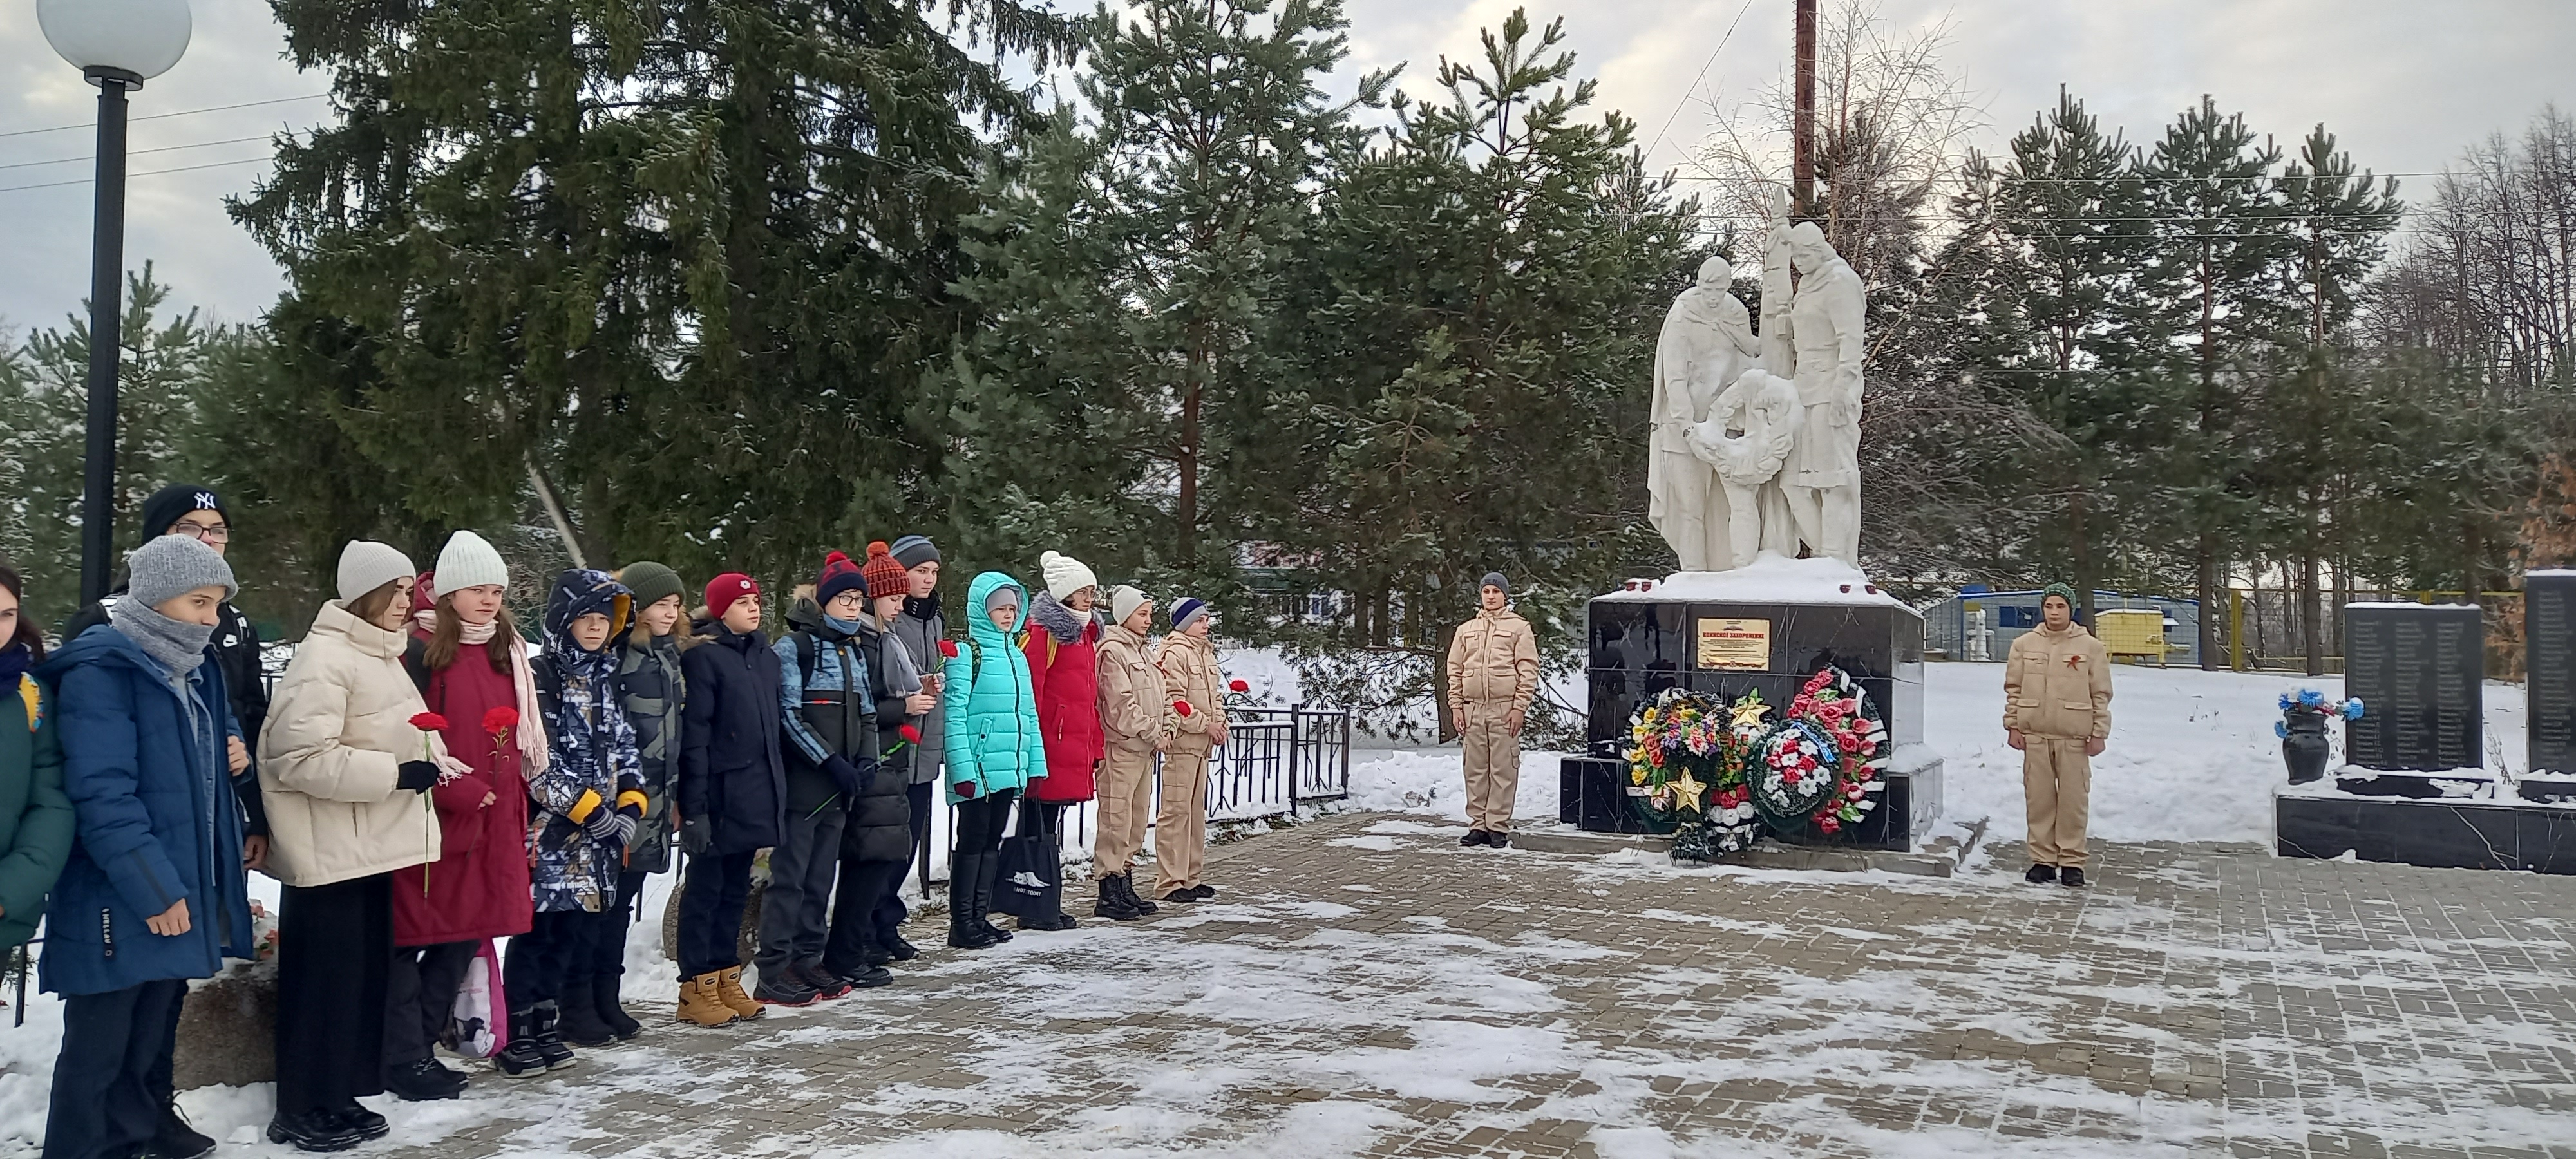 Памятная дата 3 декабря – дань уважения бессмертному подвигу павших защитников Отечества, чьи имена остались неизвестными